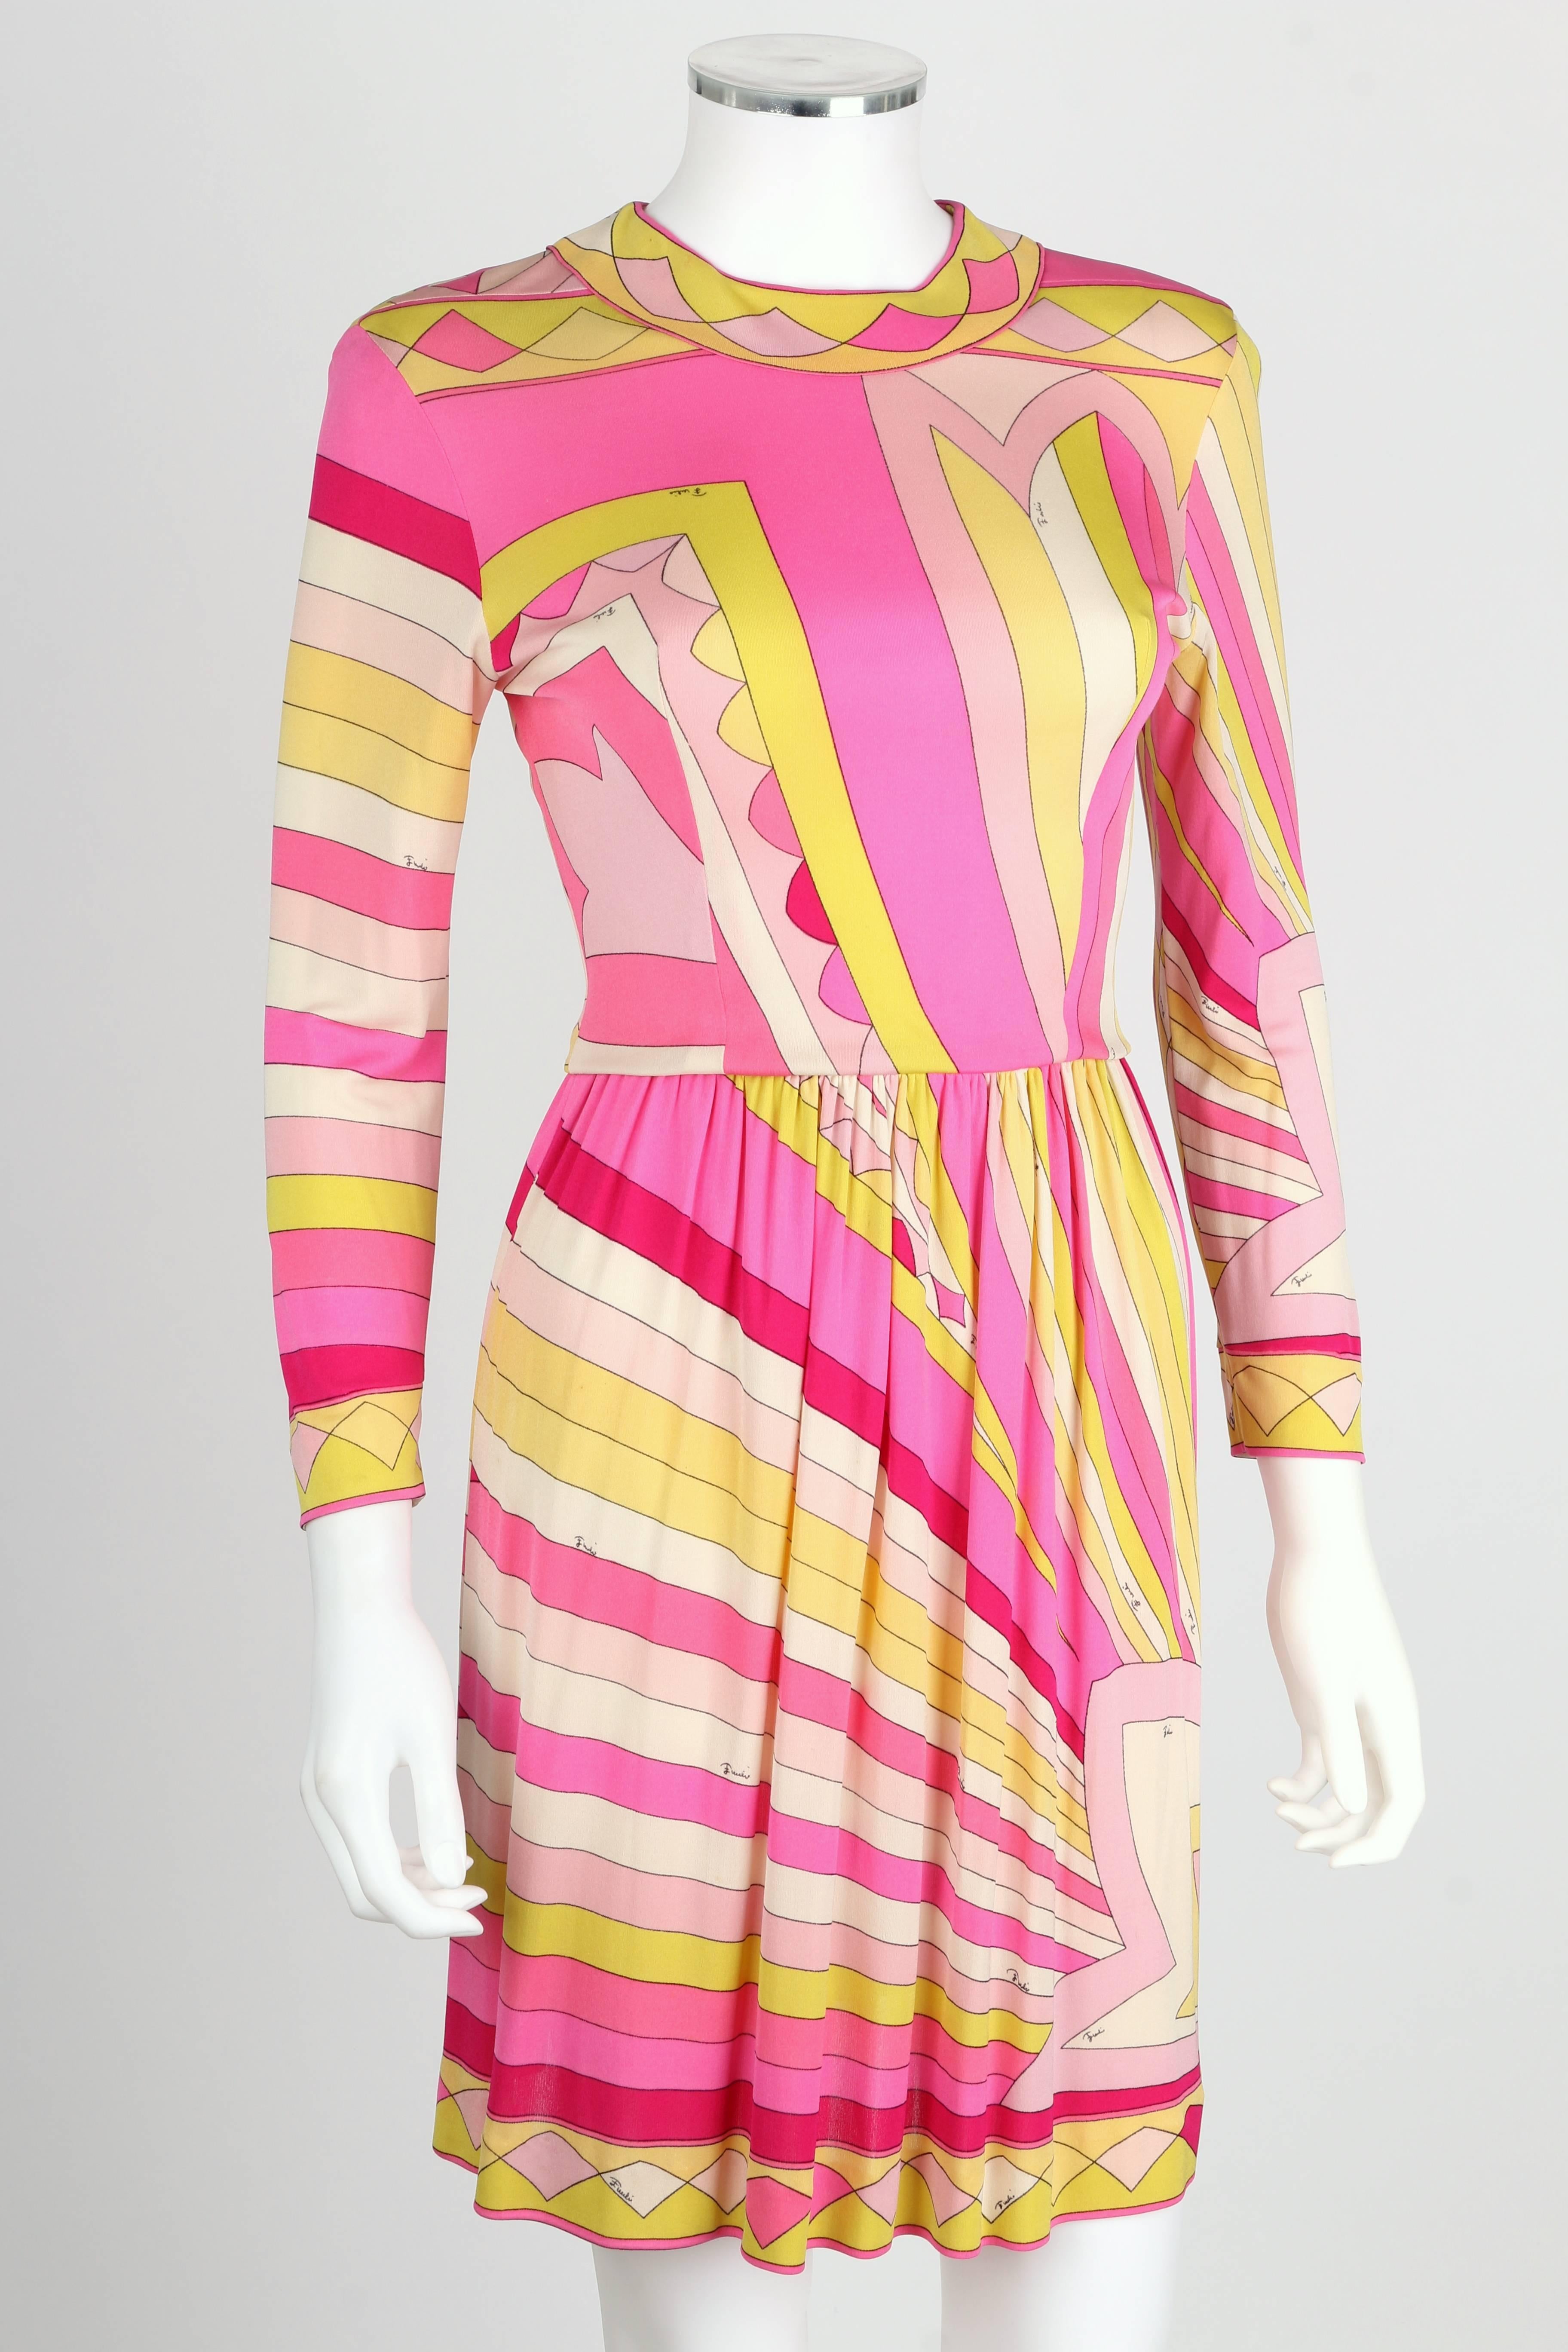 Vintage Kleid aus Seidenjersey von Emilio Pucci aus den 1960er Jahren. All-Over-Sunburst-Signaturdruck in Rosa-, Gelb- und Weißtönen. Dekorative Borte an Manschetten, Halsausschnitt und Saum. Runder Ausschnitt. Ärmel in Handgelenklänge.